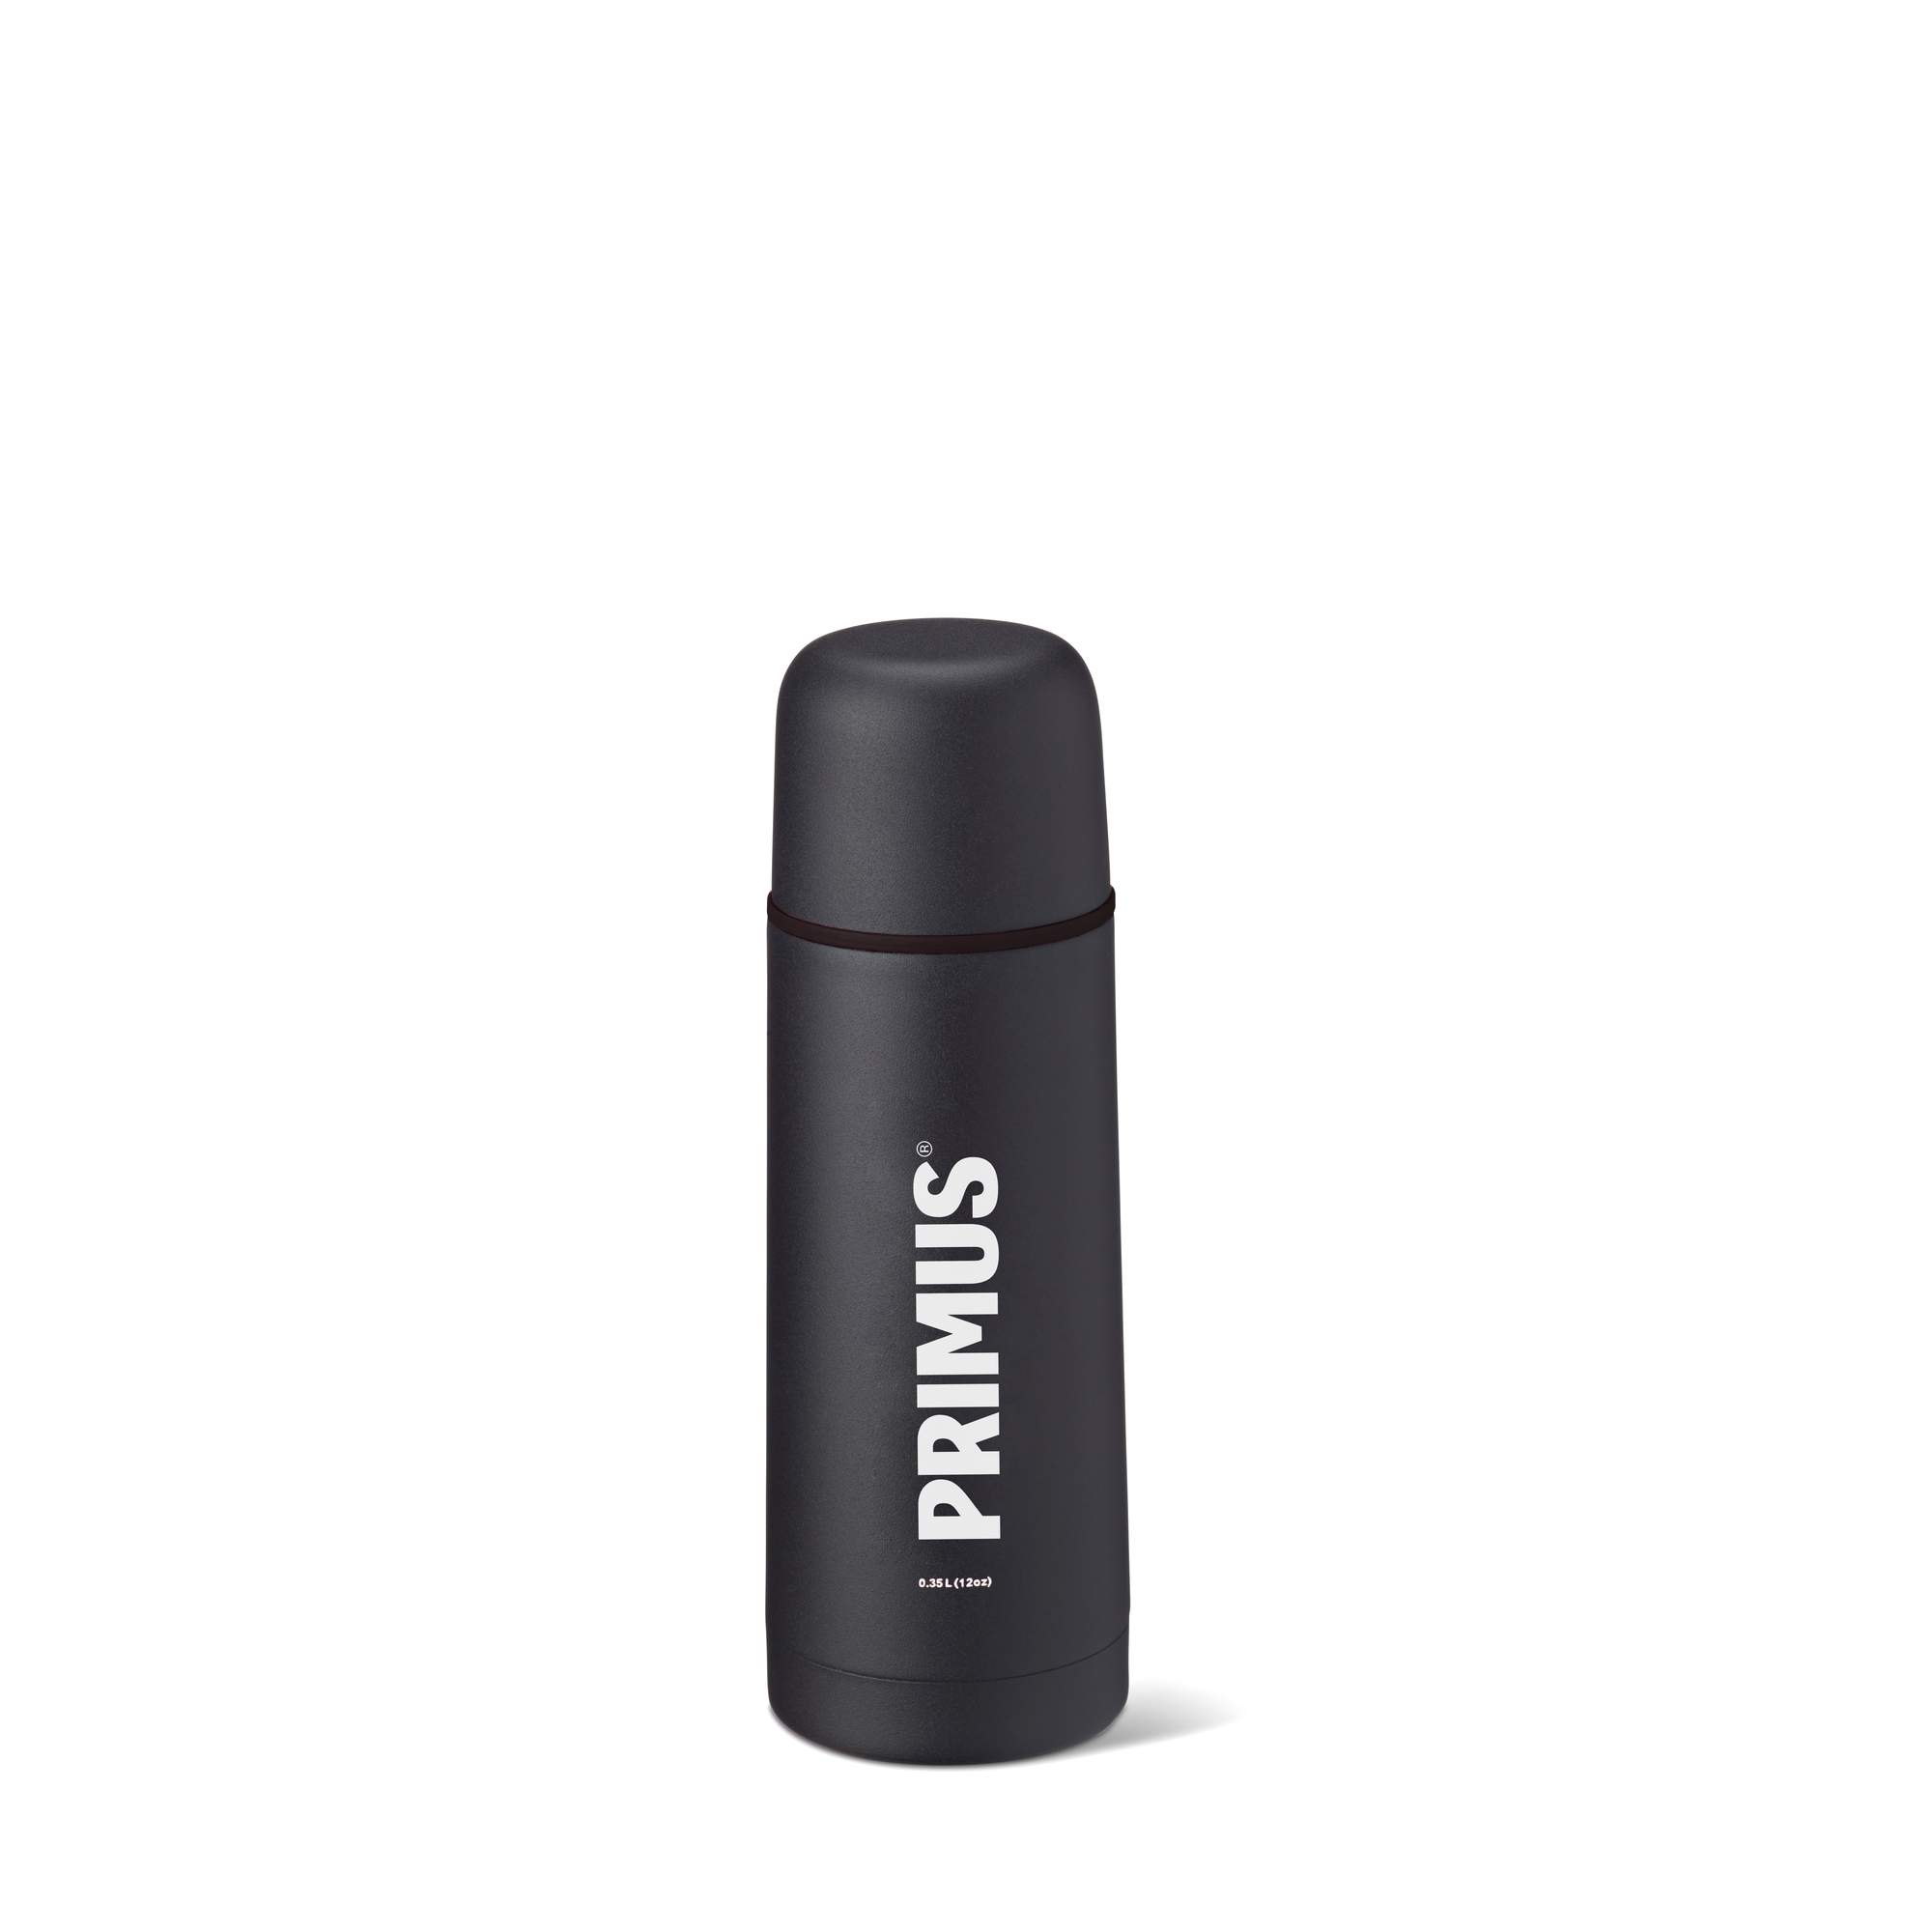 Immagine di Primus - Bottiglia isolante sottovuoto 350 ml